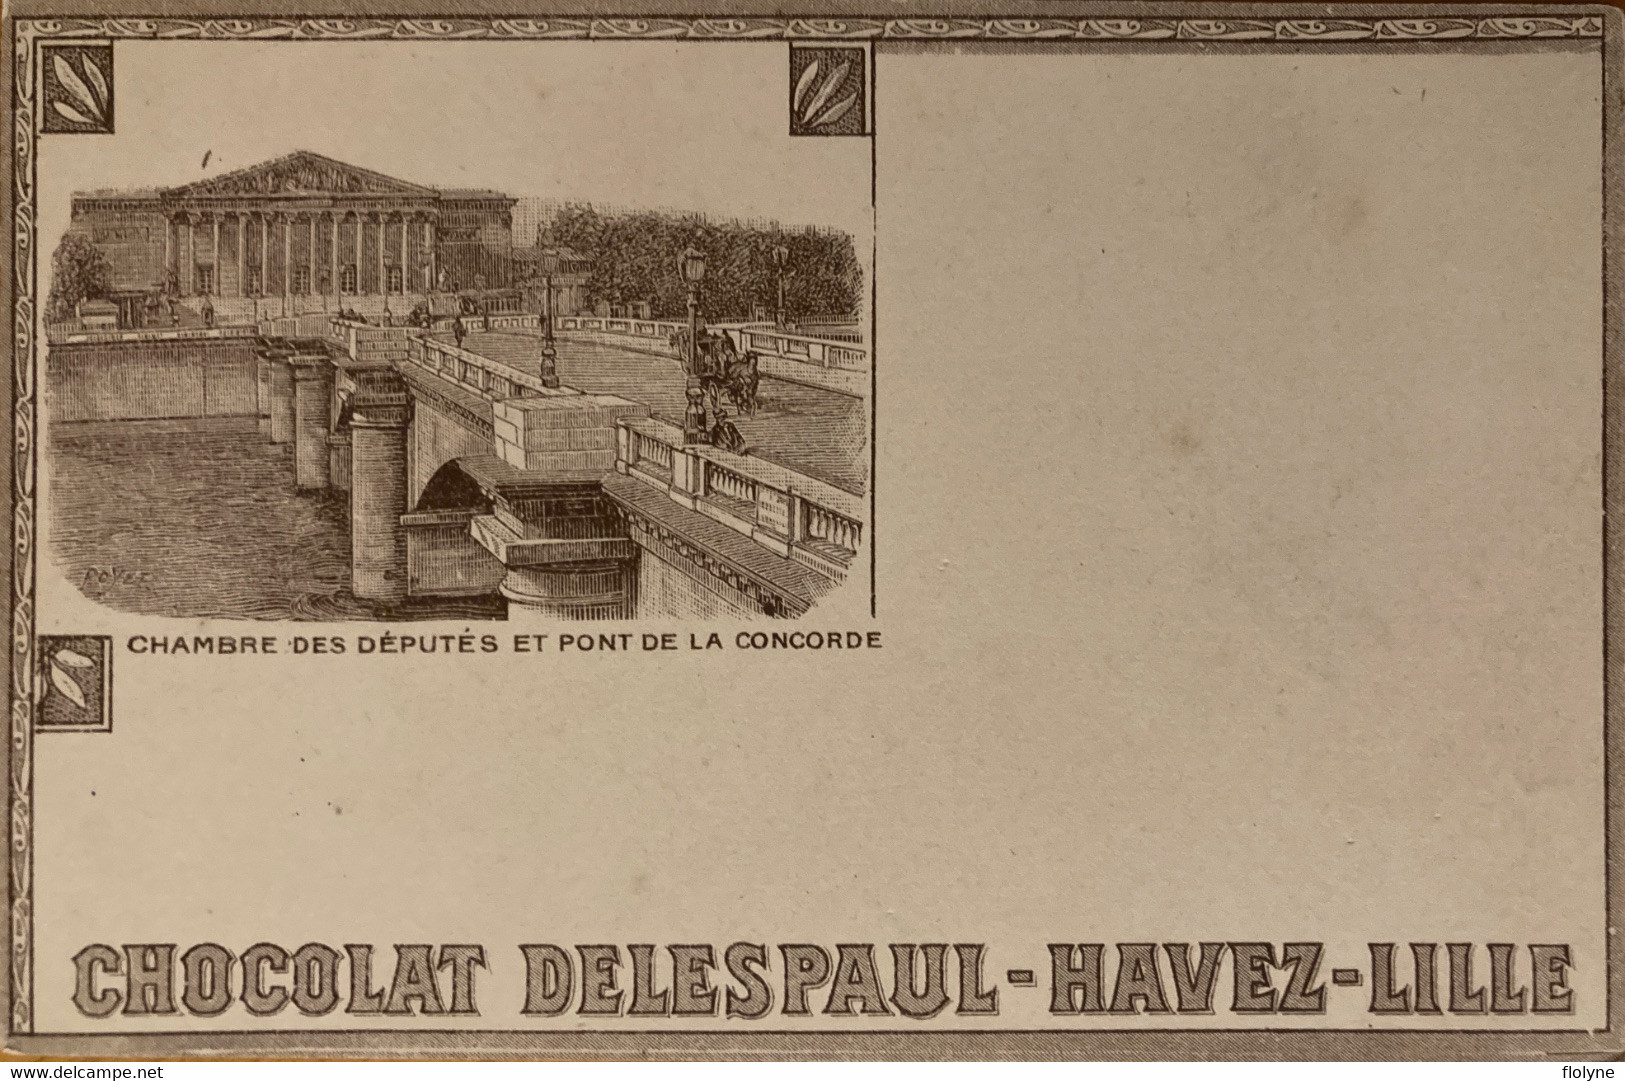 Pub Publicité CHOCOLAT DELESPAUL HAVEZ LILLE - Illustrateur POYET - Paris Chambre Députés Pont Concorde - Advertising